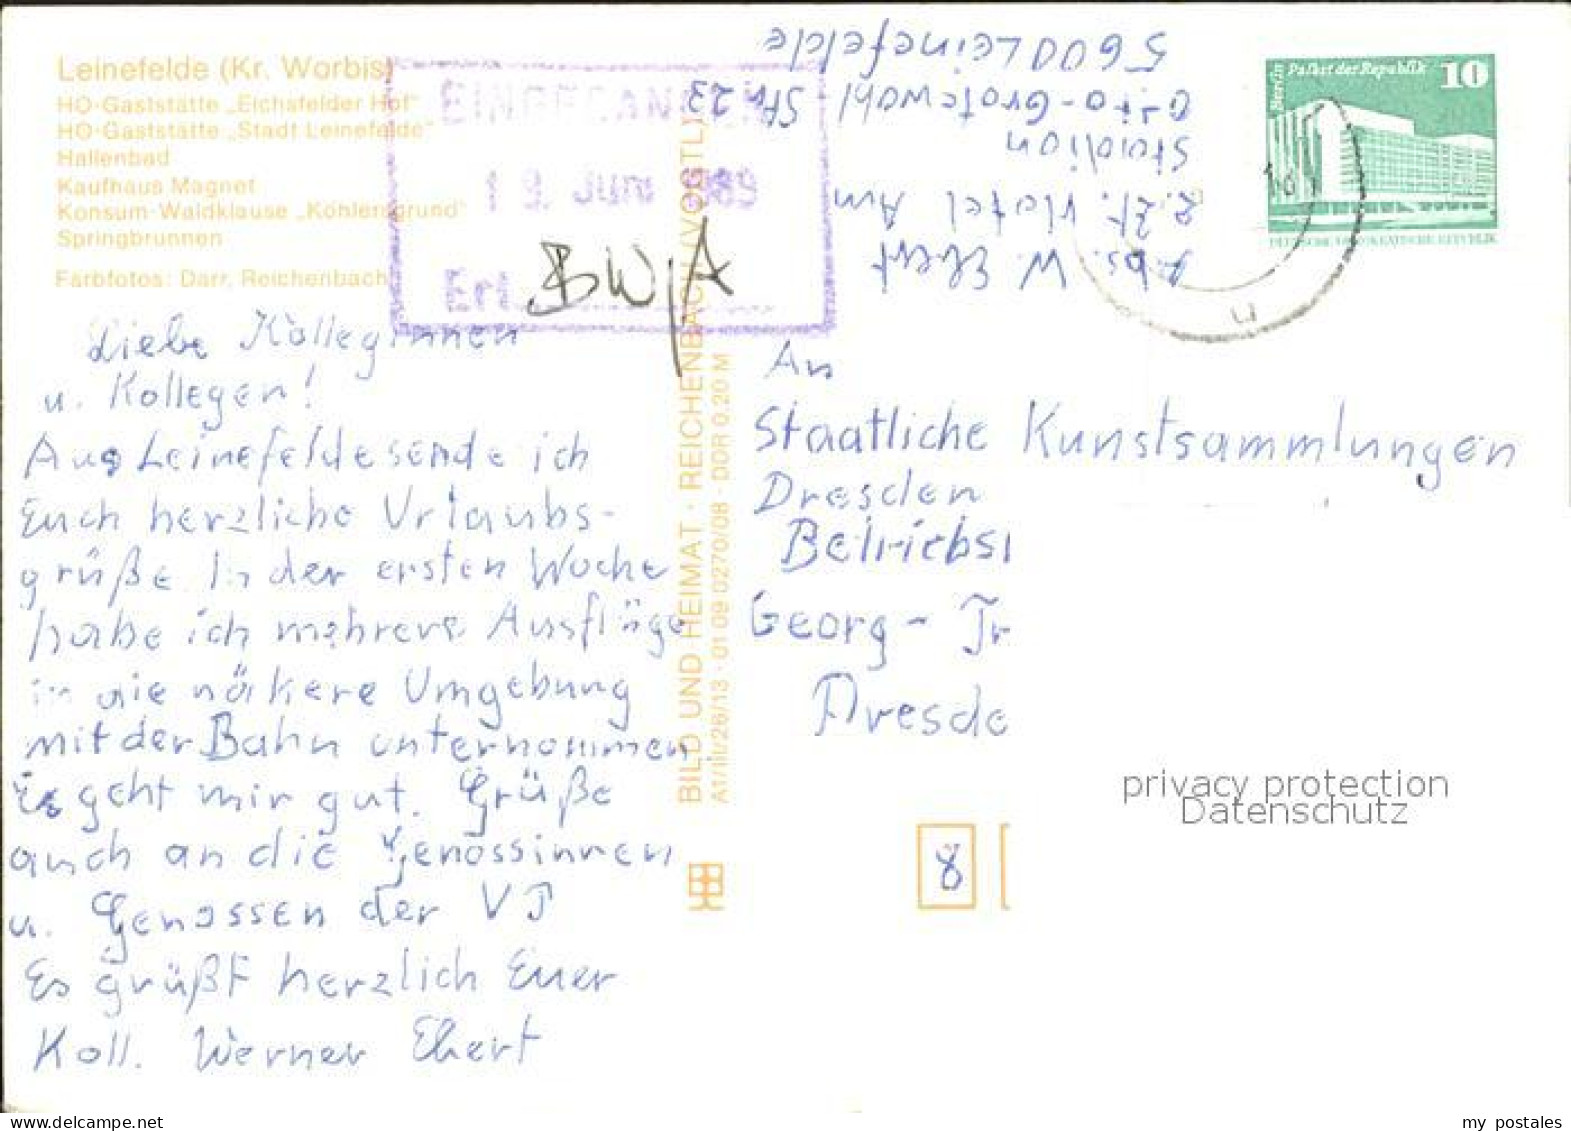 72372561 Leinefelde HO-Gaststaette Stadt Leinefelde Hallenbad Kaufhaus Magnet Le - Worbis